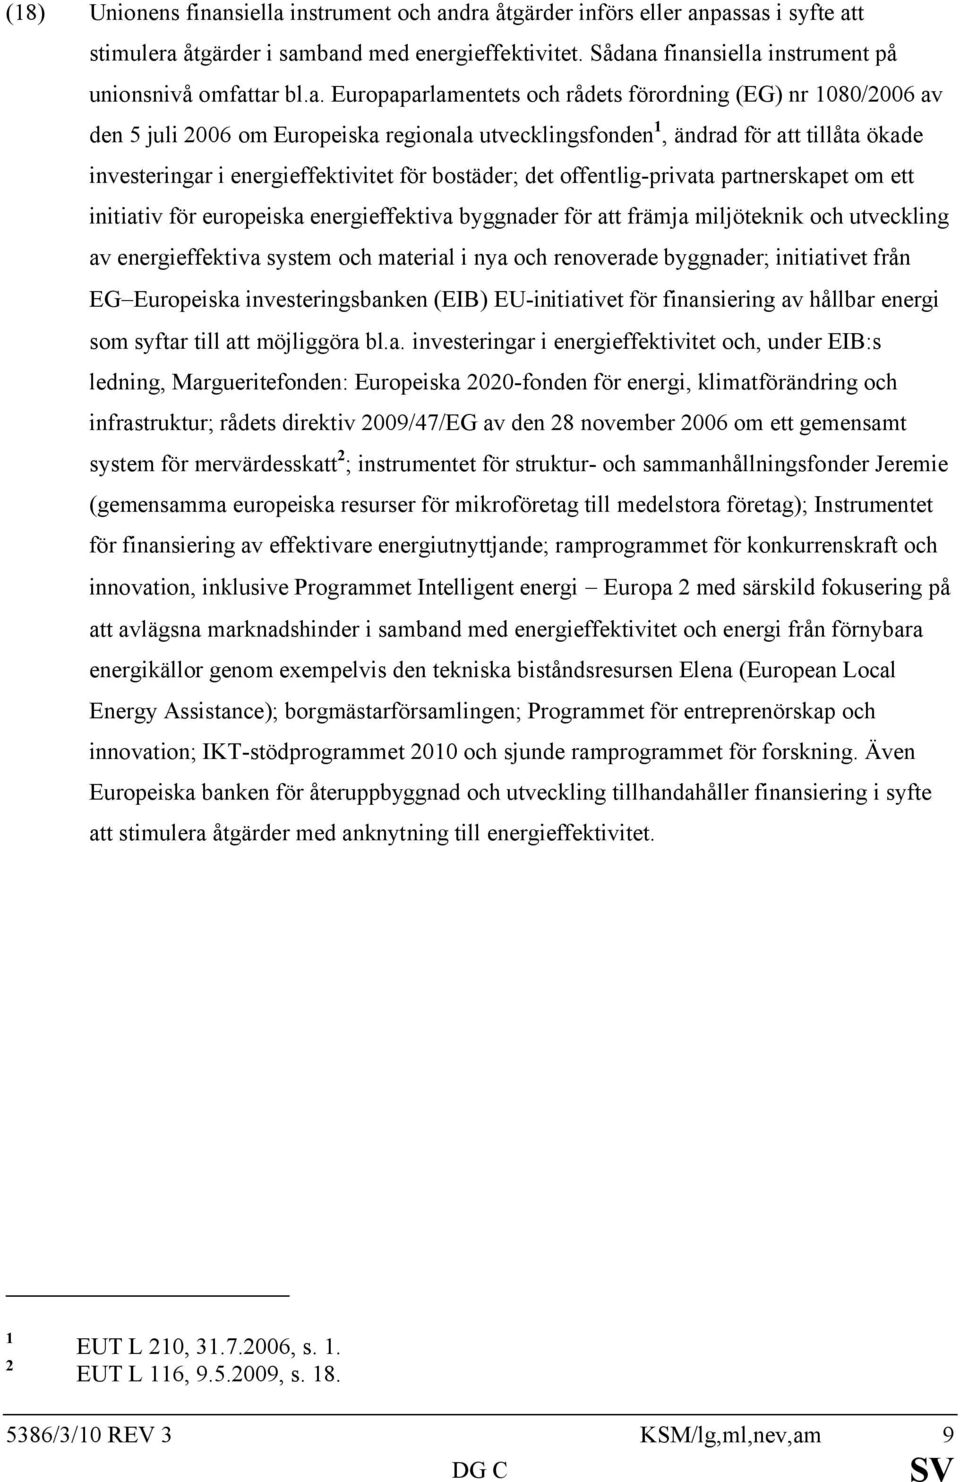 bostäder; det offentlig-privata partnerskapet om ett initiativ för europeiska energieffektiva byggnader för att främja miljöteknik och utveckling av energieffektiva system och material i nya och